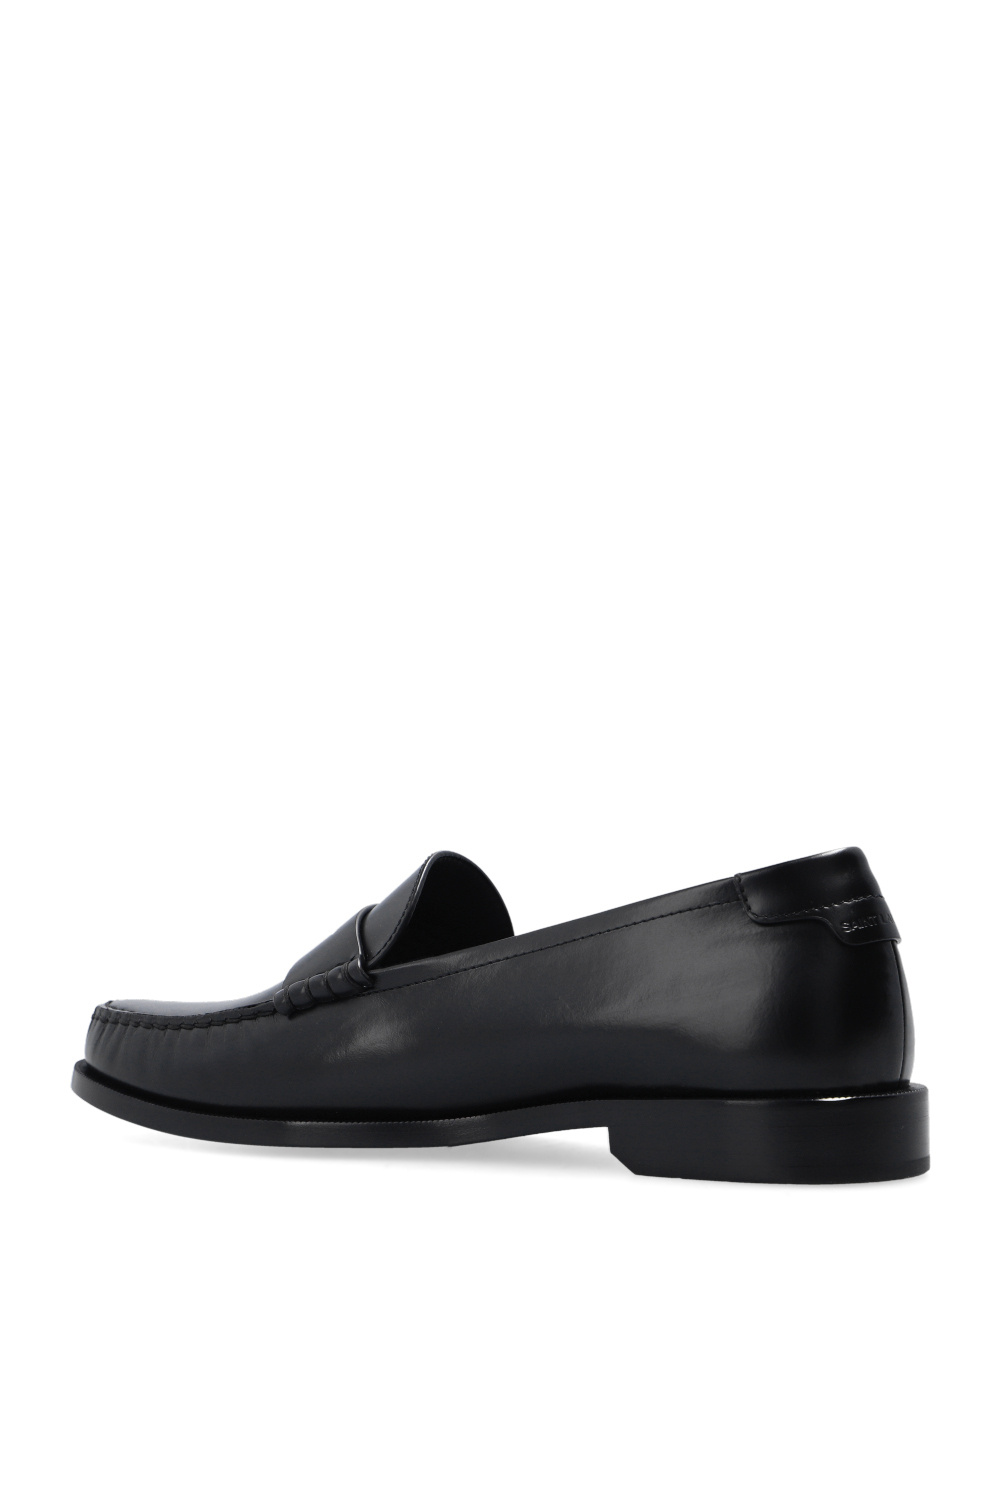 Saint Laurent Leather loafers | Men's Shoes | Vitkac